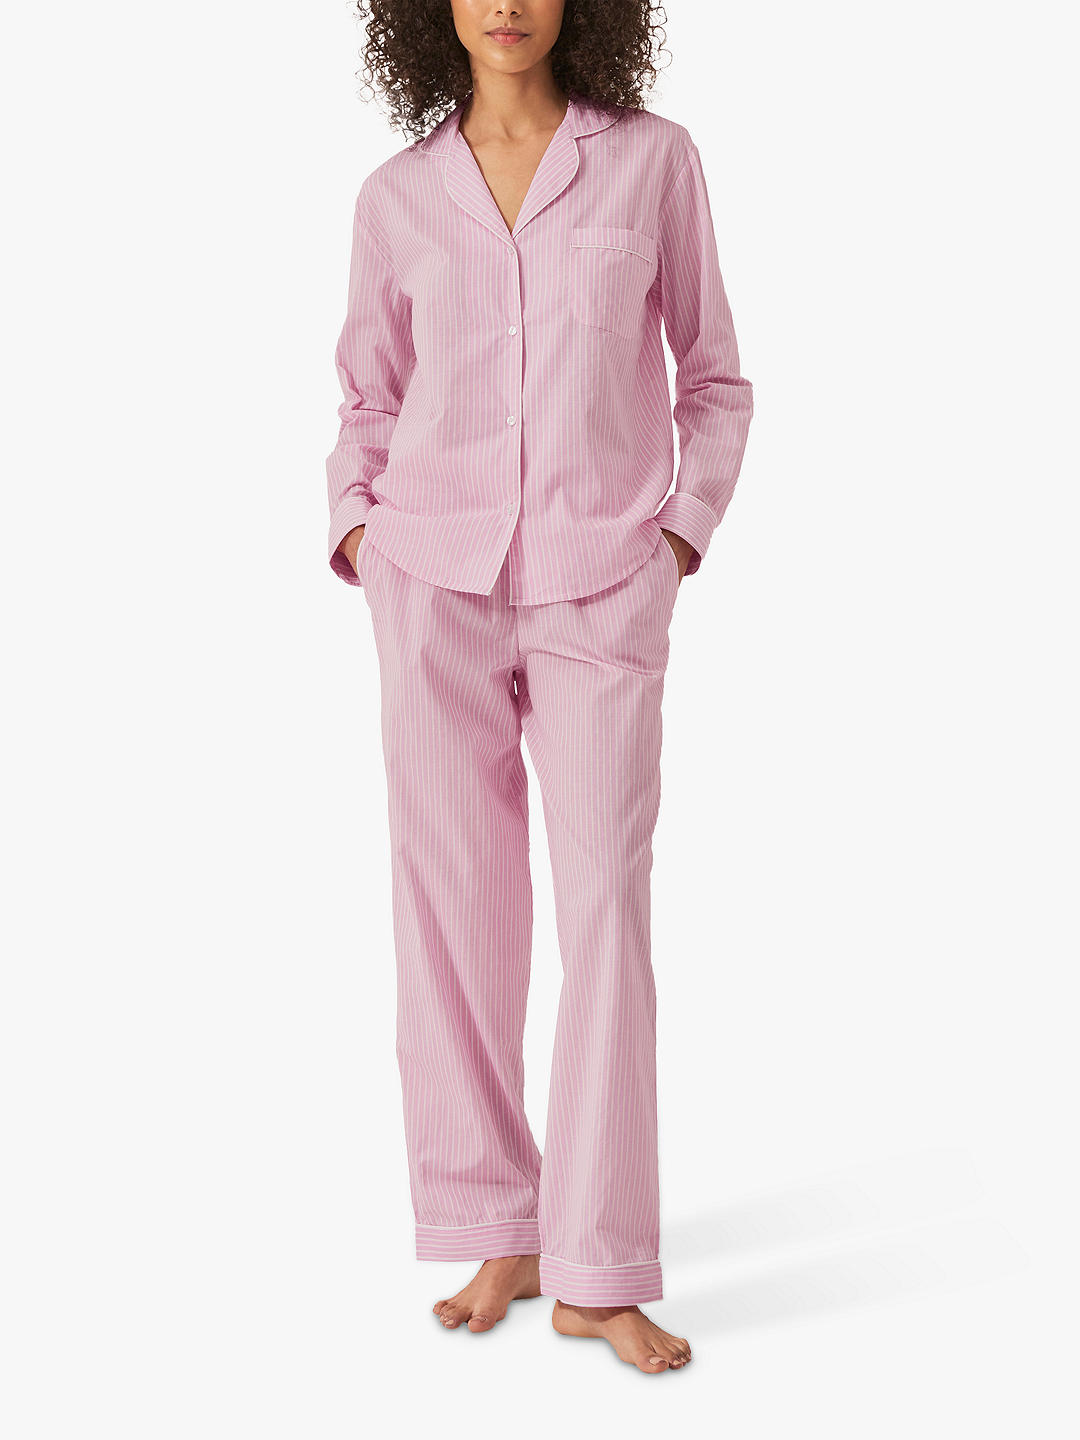 myza Stripe Organic Cotton Shirt Pyjama Set, Pink/White